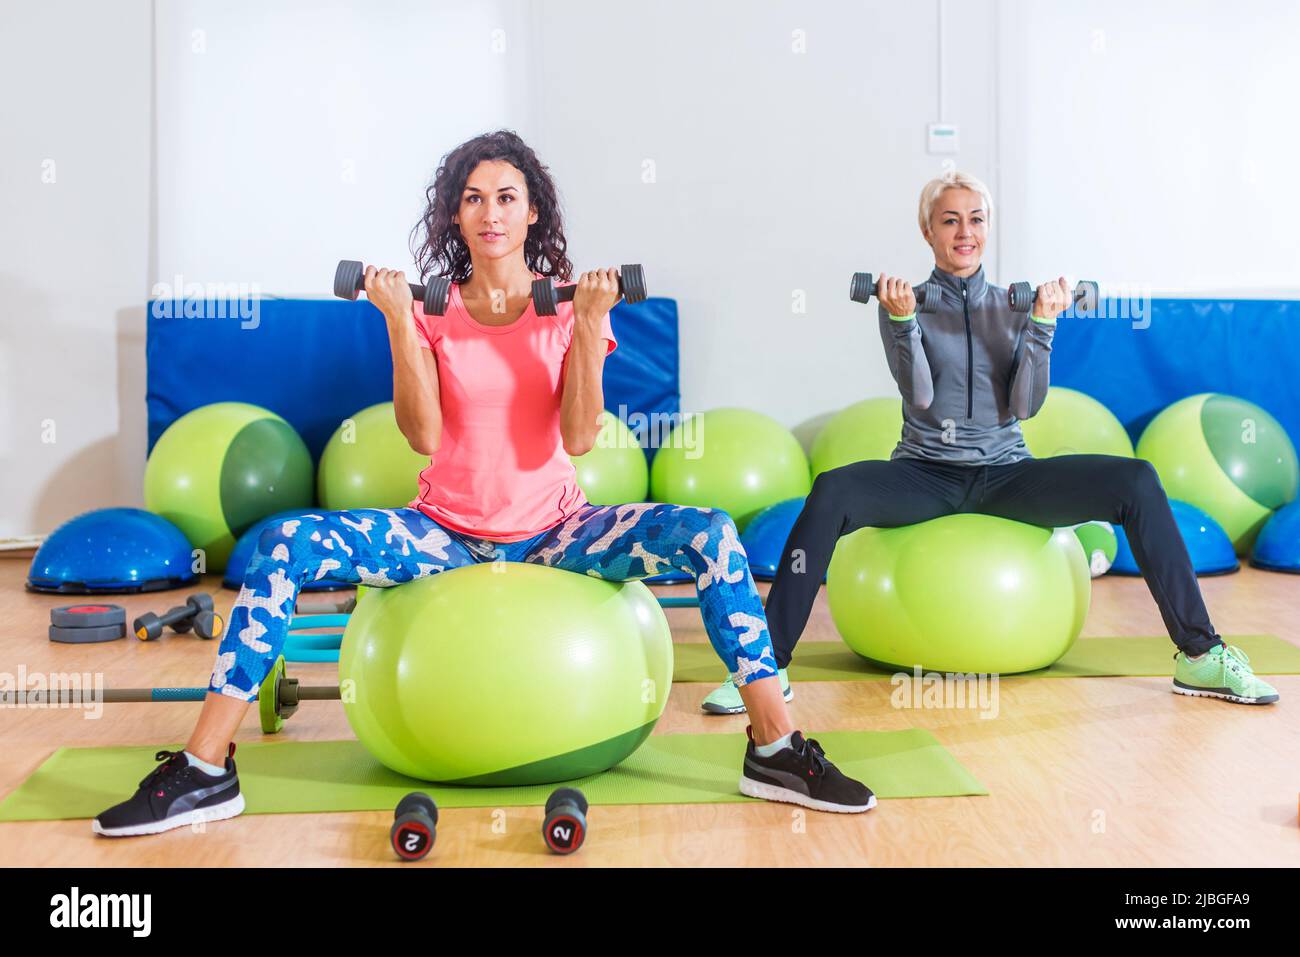 Les femmes de fitness s'exerçant assis sur des balles suisses vertes faisant des biceps assis courber des poids de levage pendant le train de groupe dans le club sportif. Banque D'Images